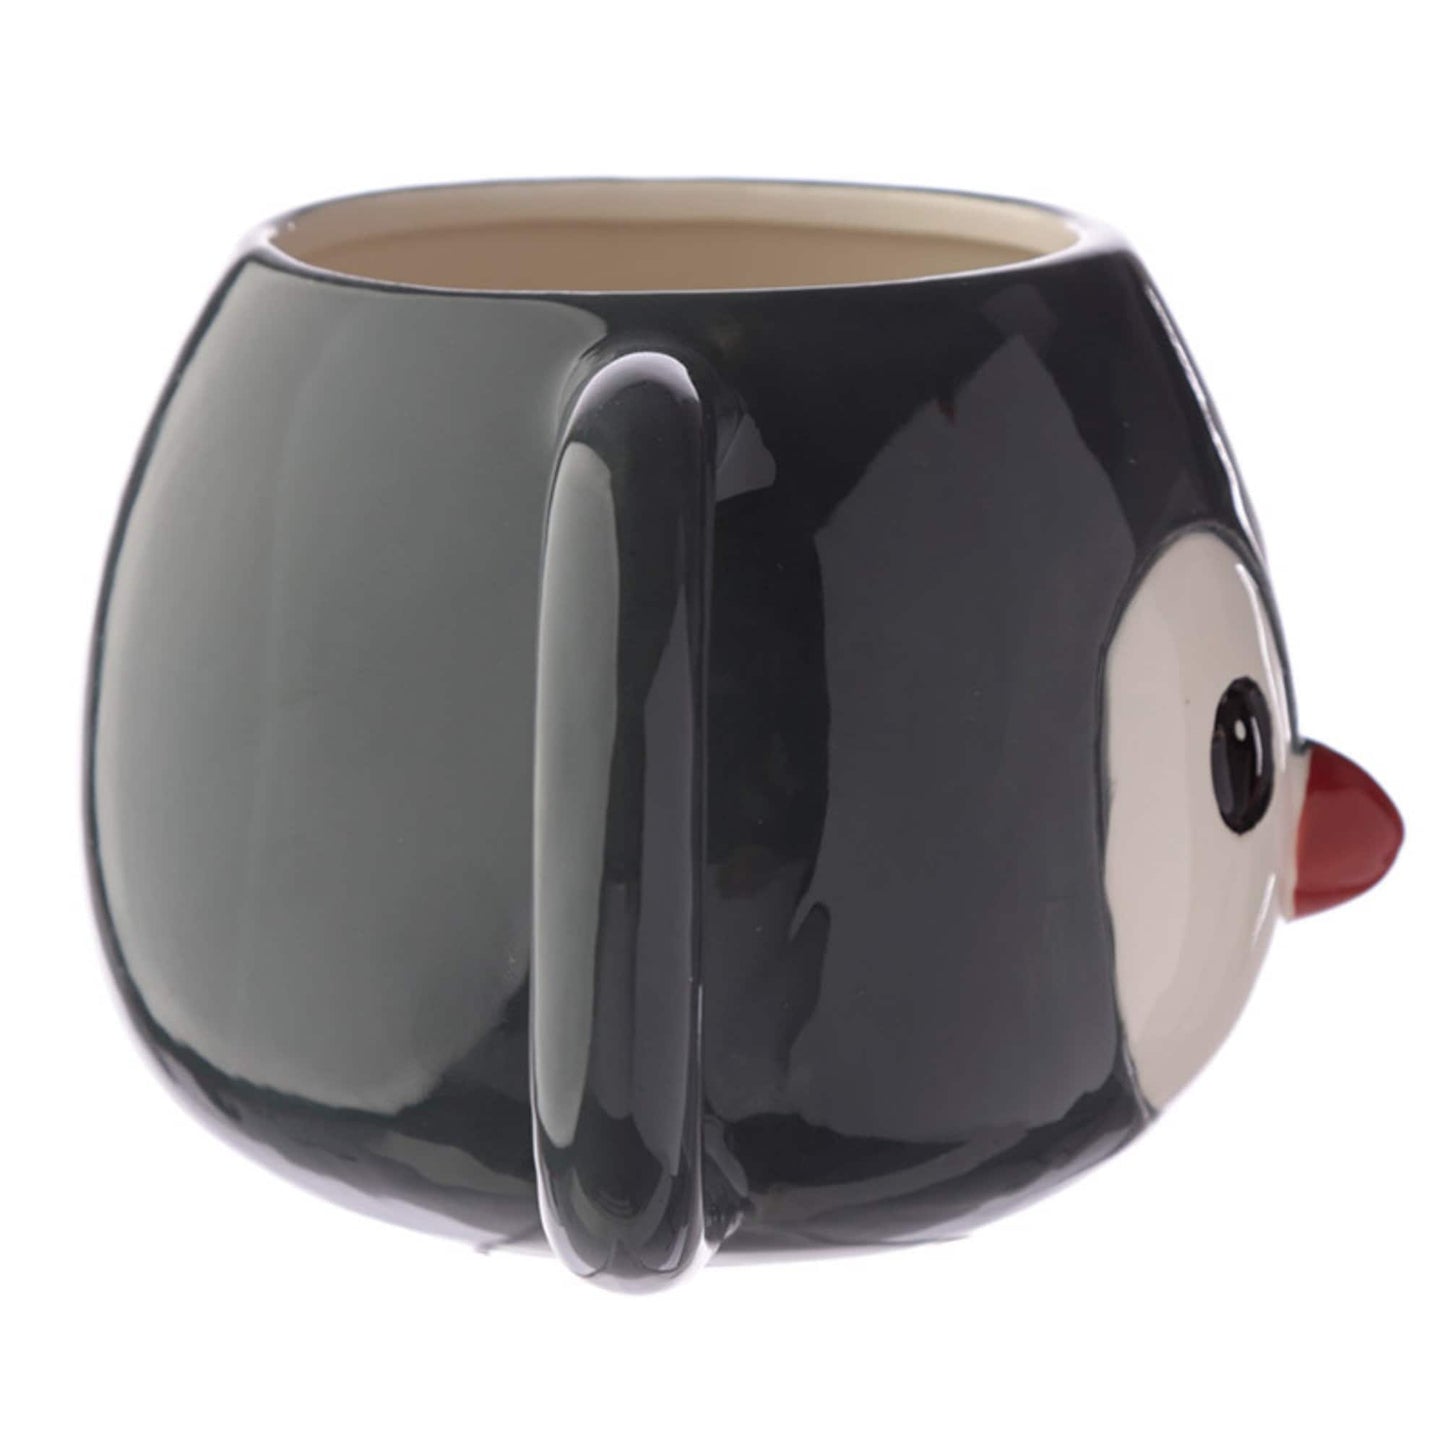 Novelty Penguin Face Round Ceramic Mug